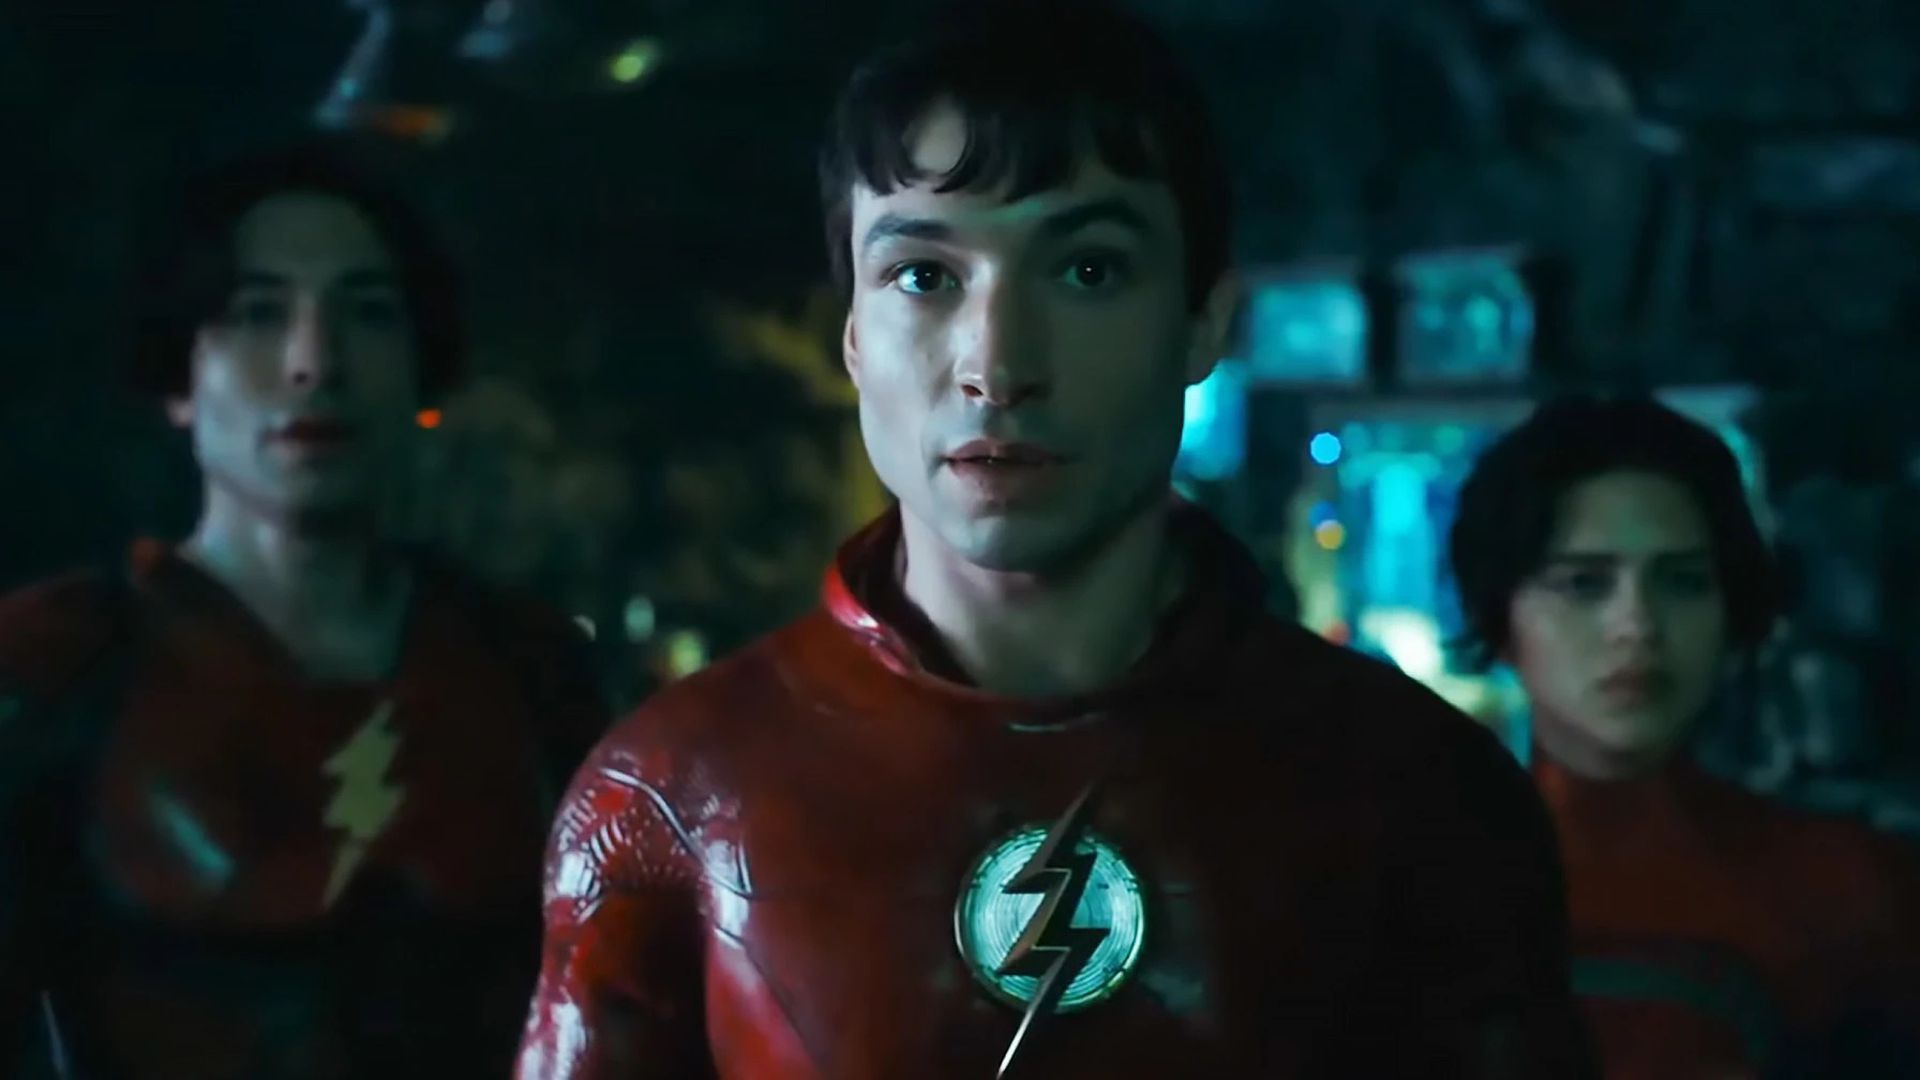 The Flash: 5 pontos da trama que você deve lembrar antes de assistir ao  filme da DC